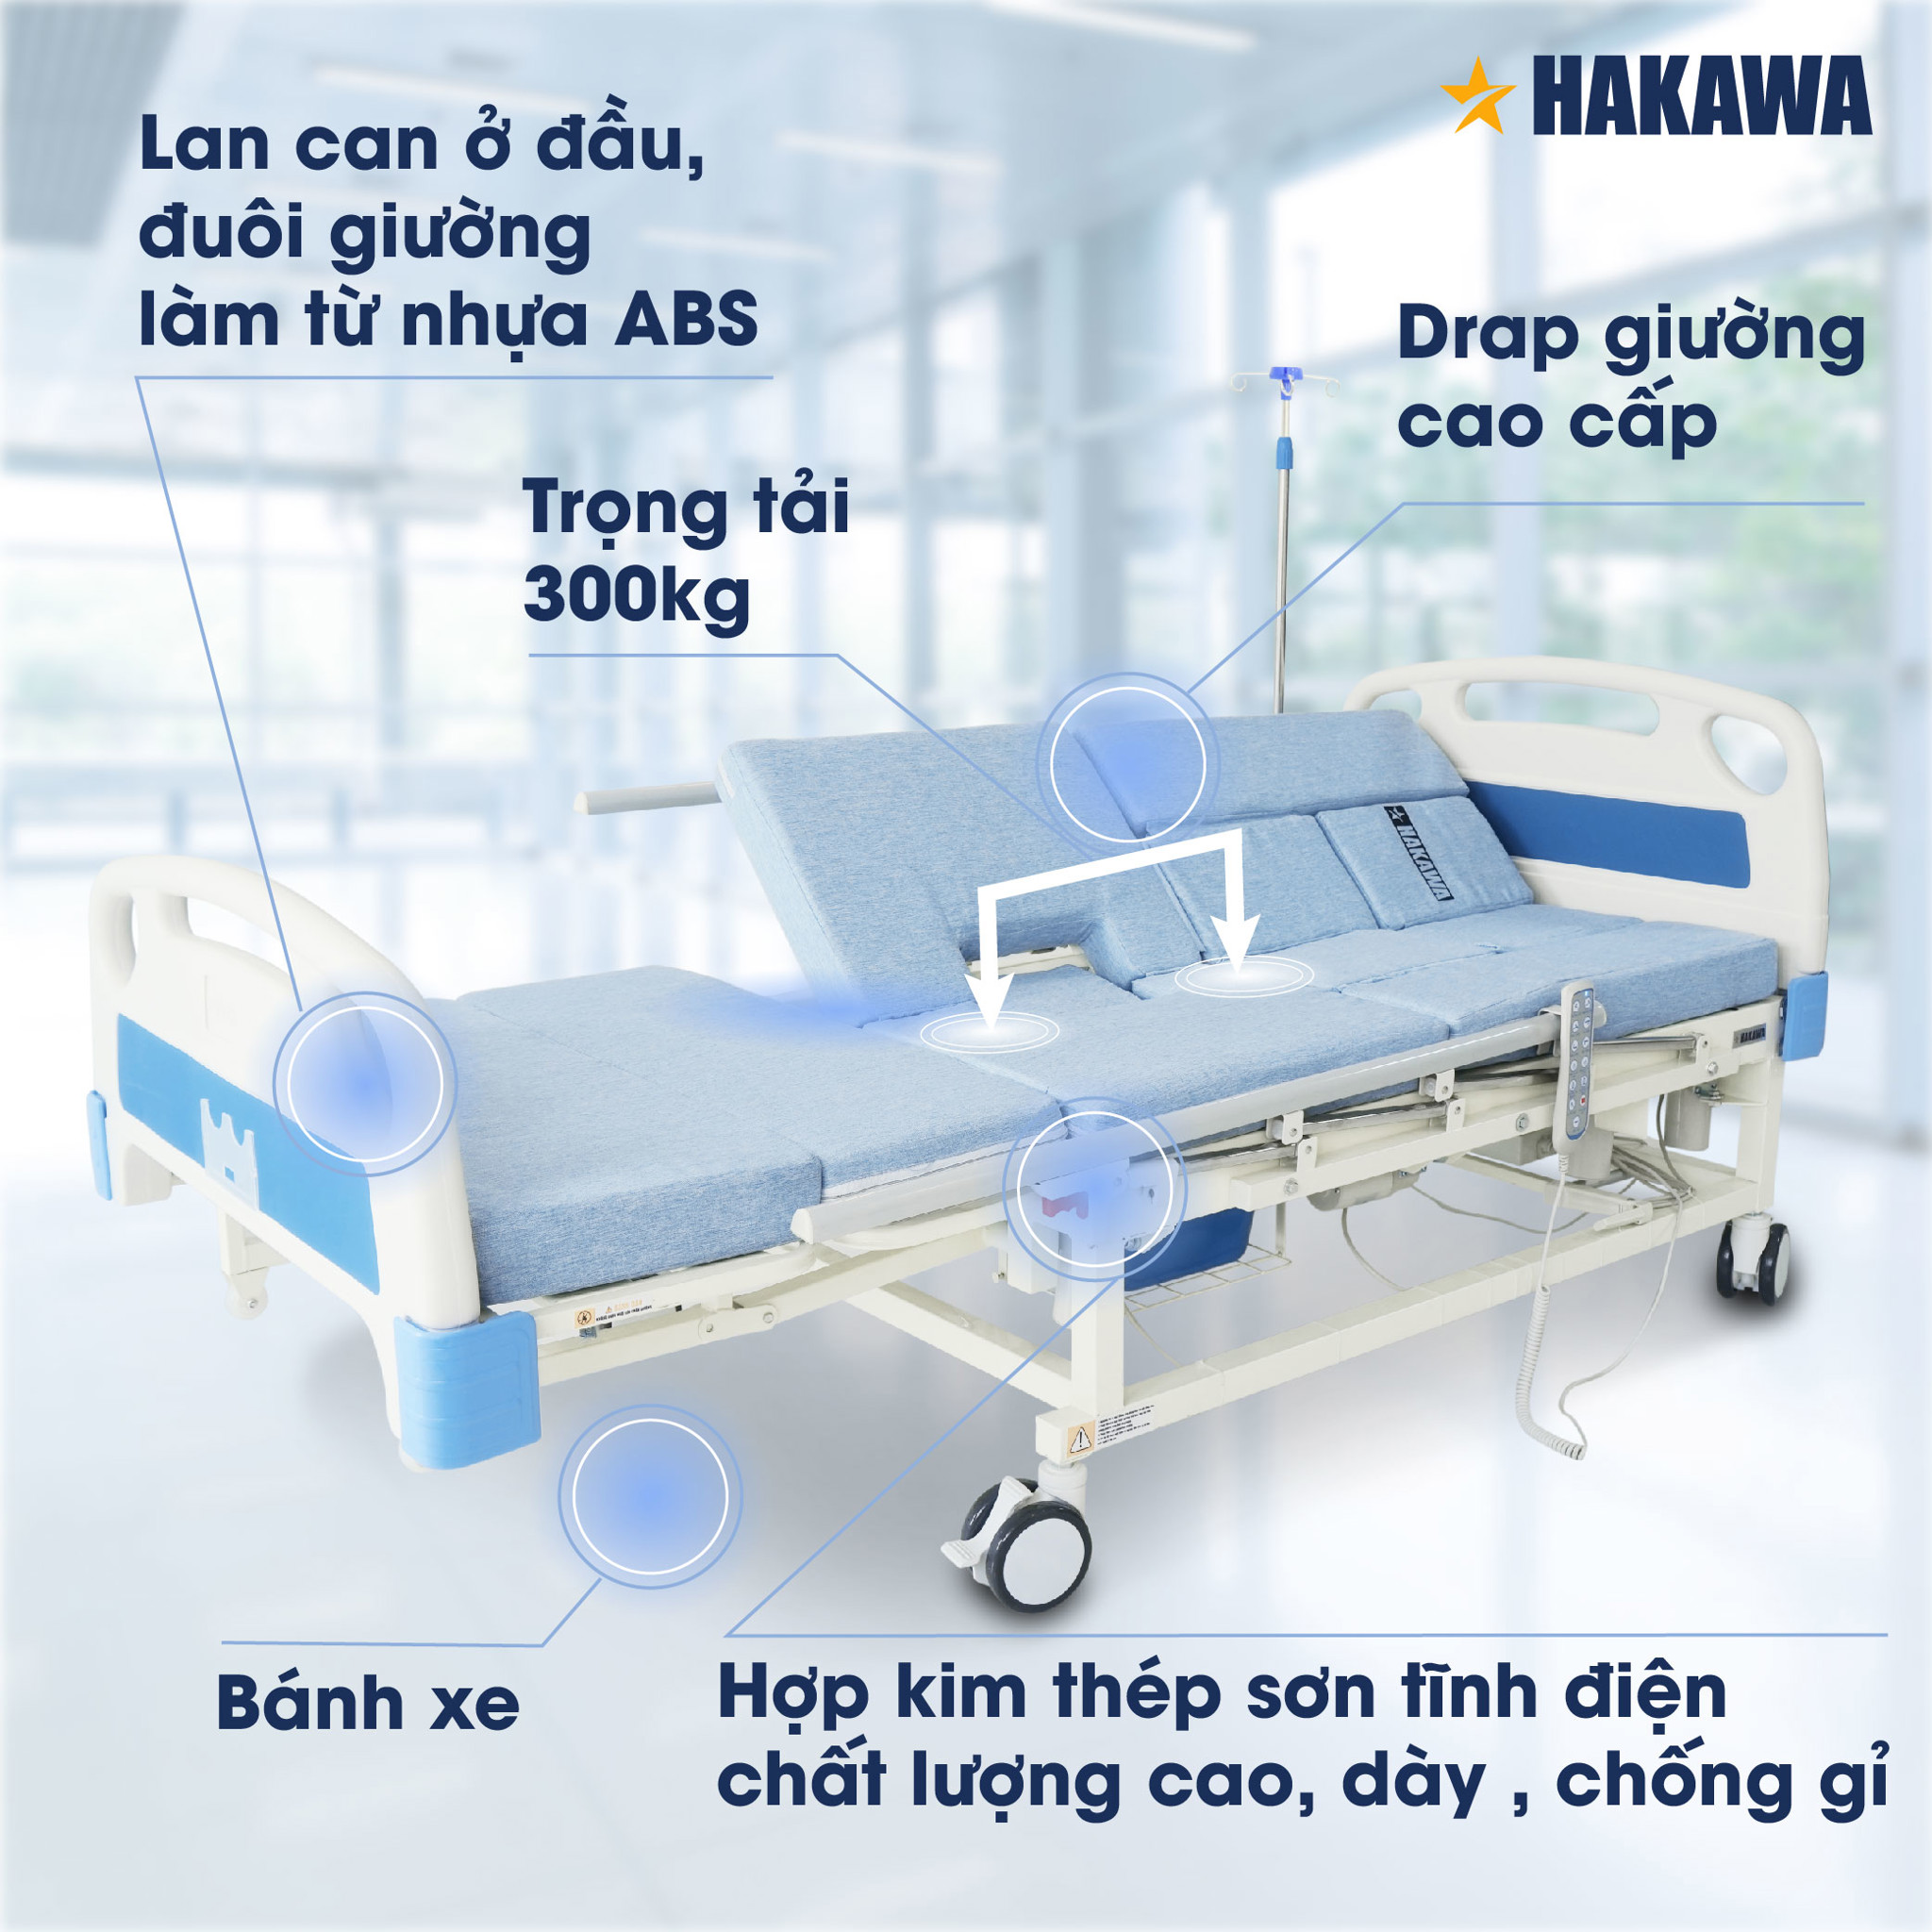 Giường y Hakawa thiết kế trọng tại lên tới 300kg và có bánh xe hỗ trợ di chuyển